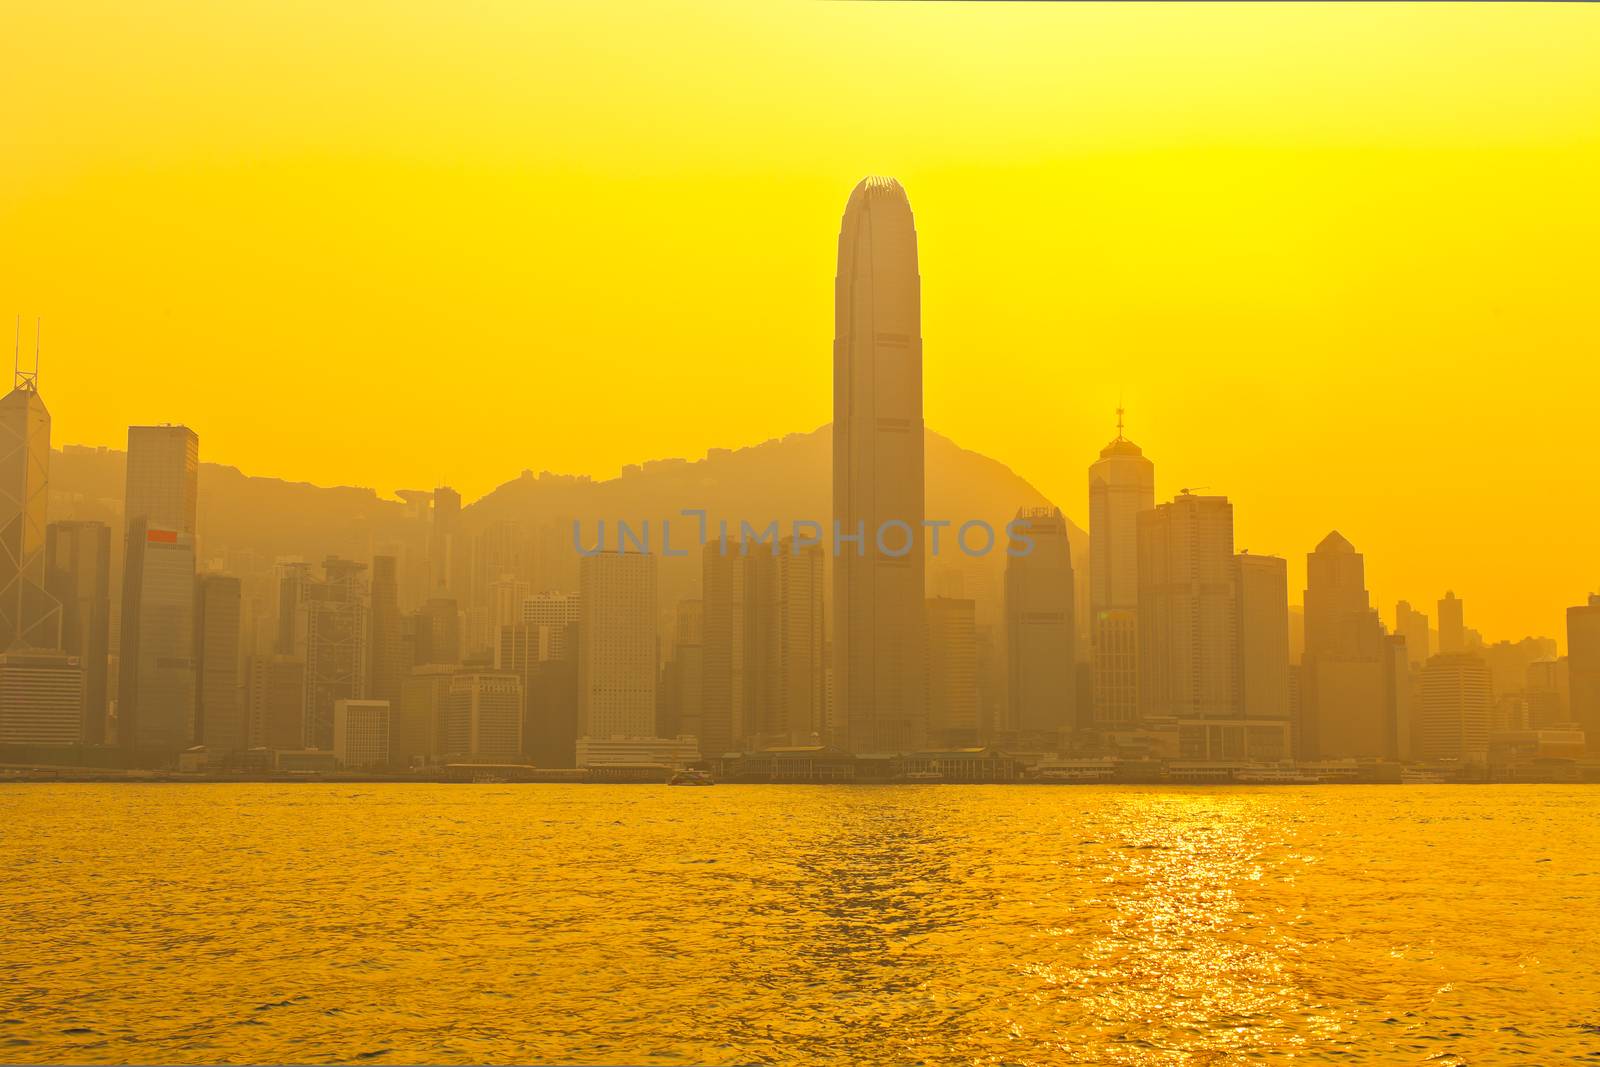 Hong Kong city at sunset by kawing921